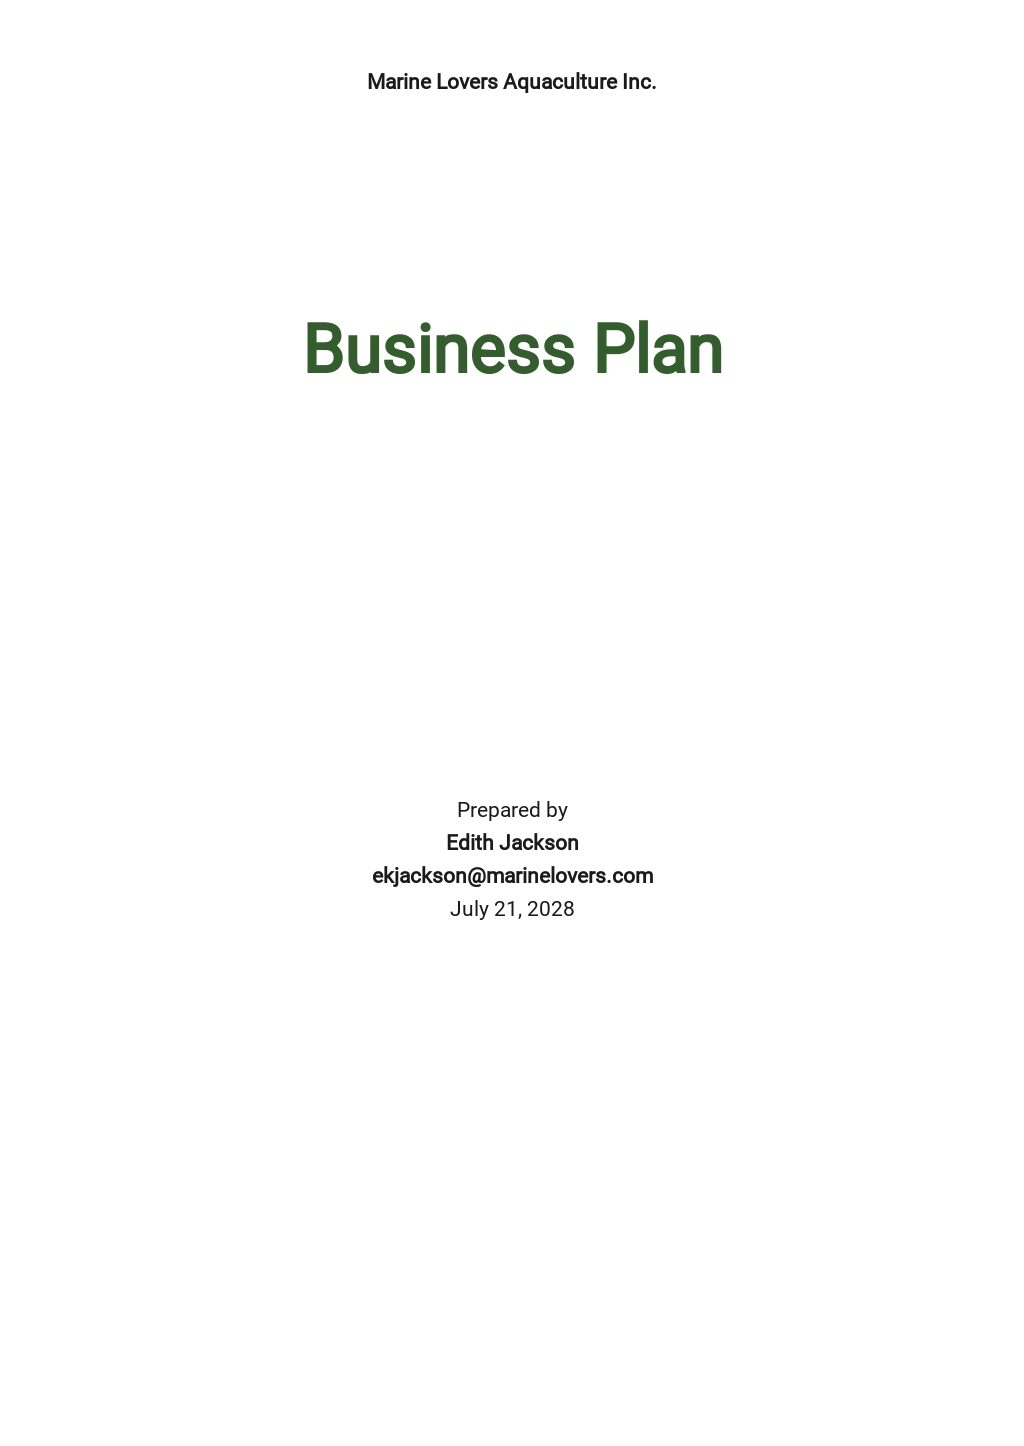 Aquaculture or Aquaponics Business Plan Template - Google Docs For Aquaponics Business Plan Templates